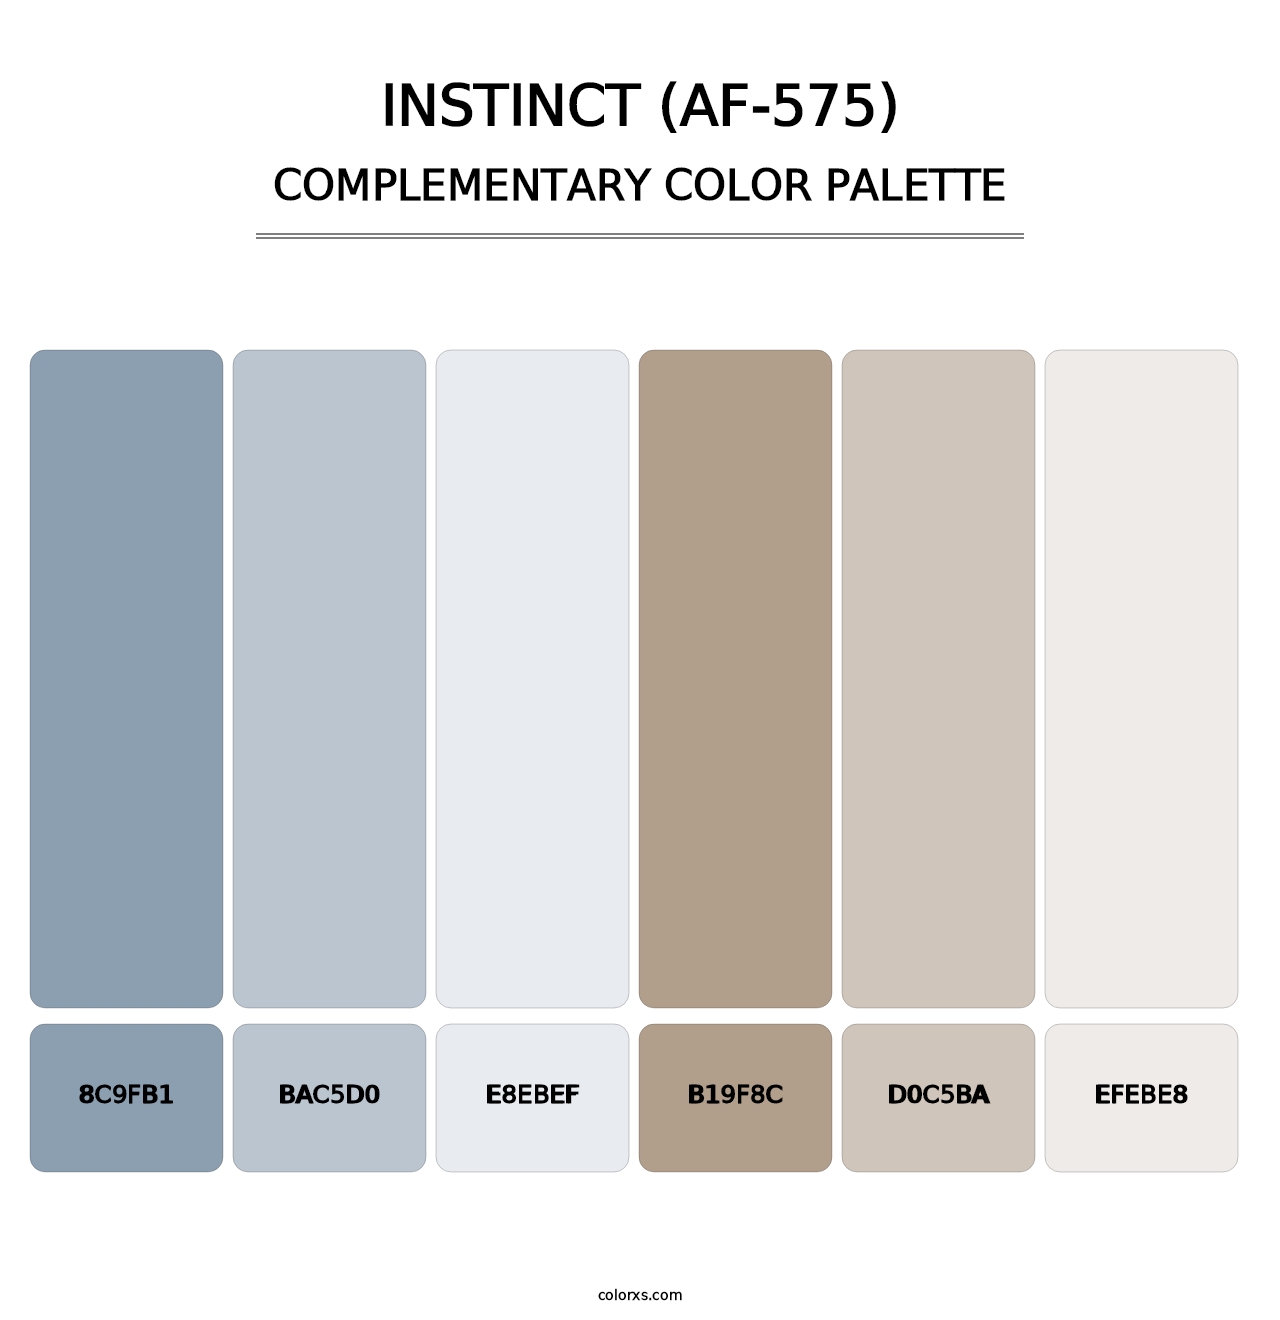 Instinct (AF-575) - Complementary Color Palette